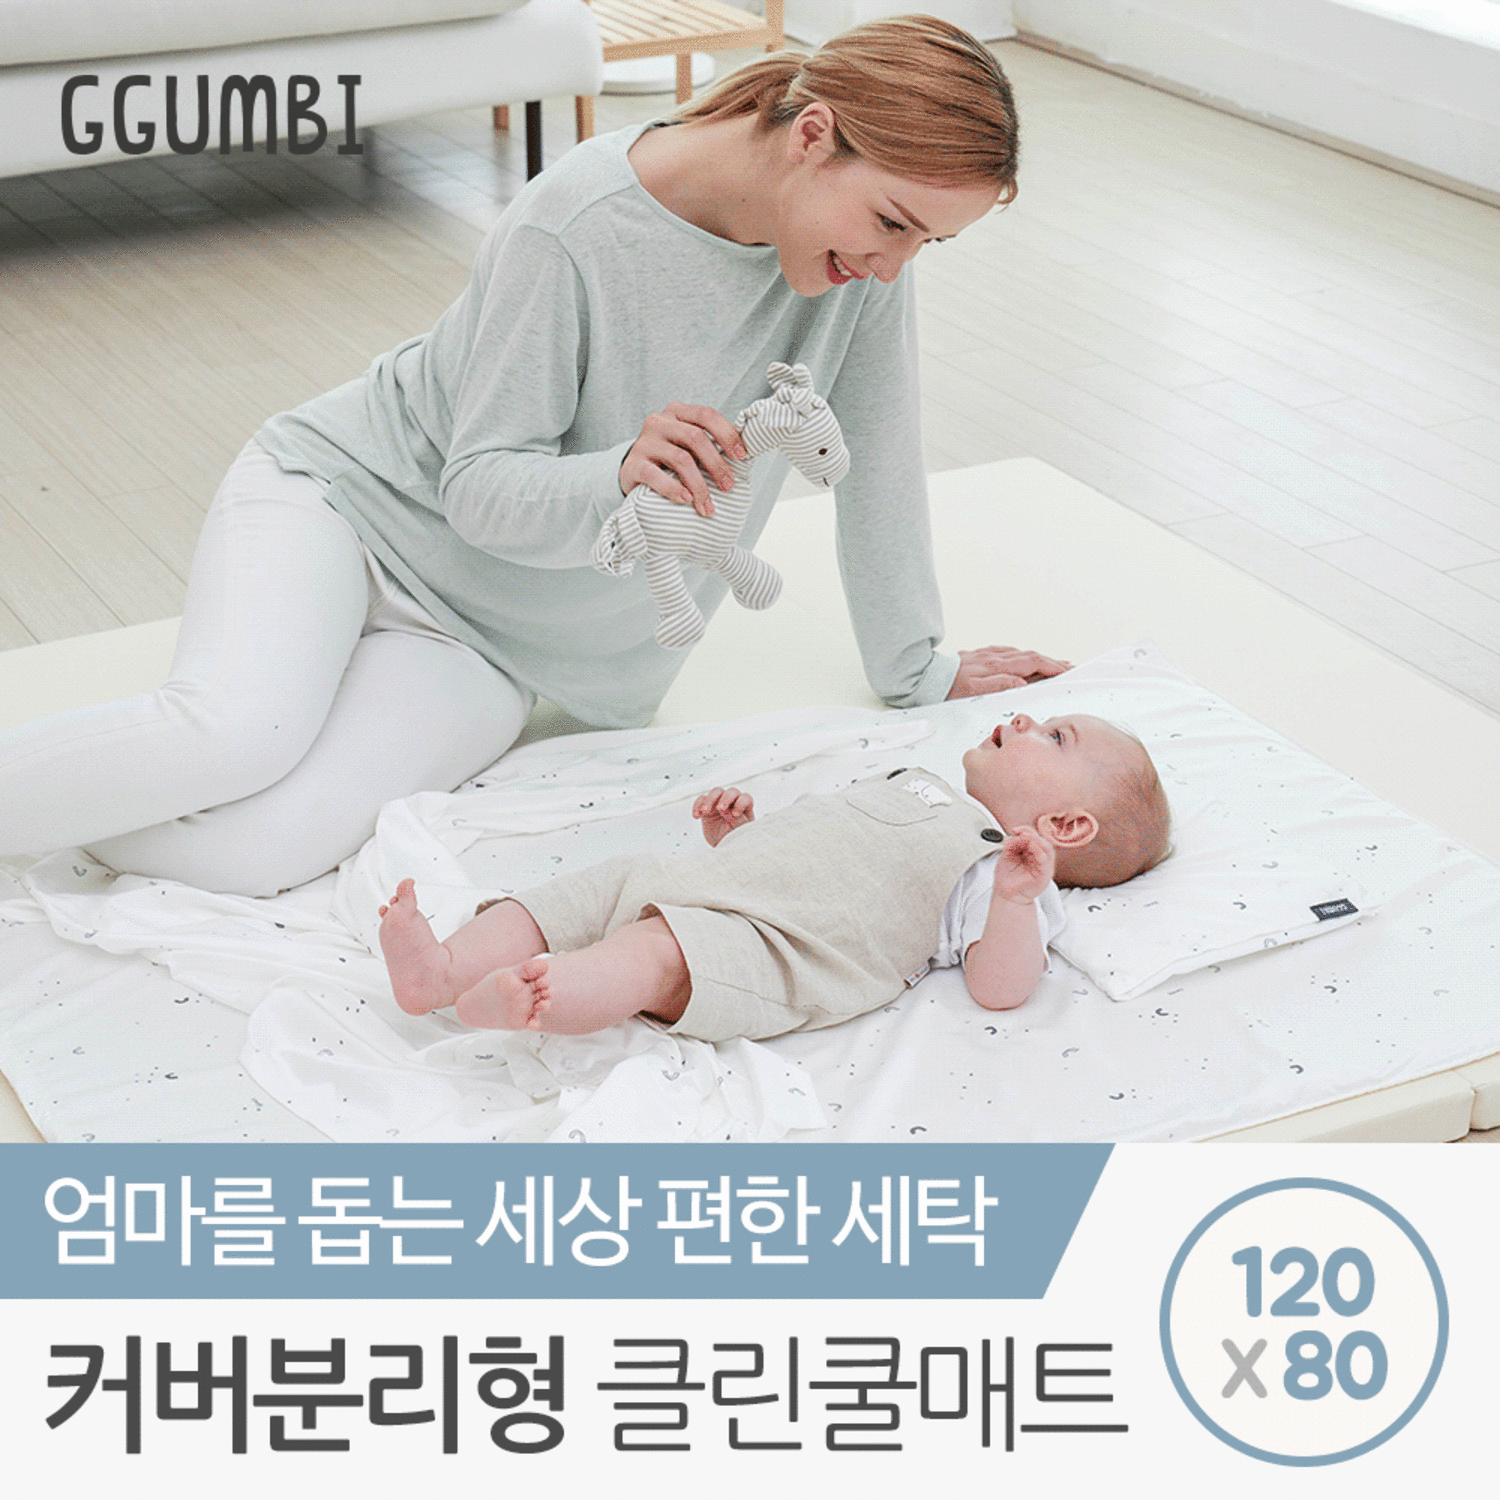 [꿈비] 커버분리형 클린 쿨매트 120x80cm / 3D매쉬 매쉬 여름 아기 유아 인견